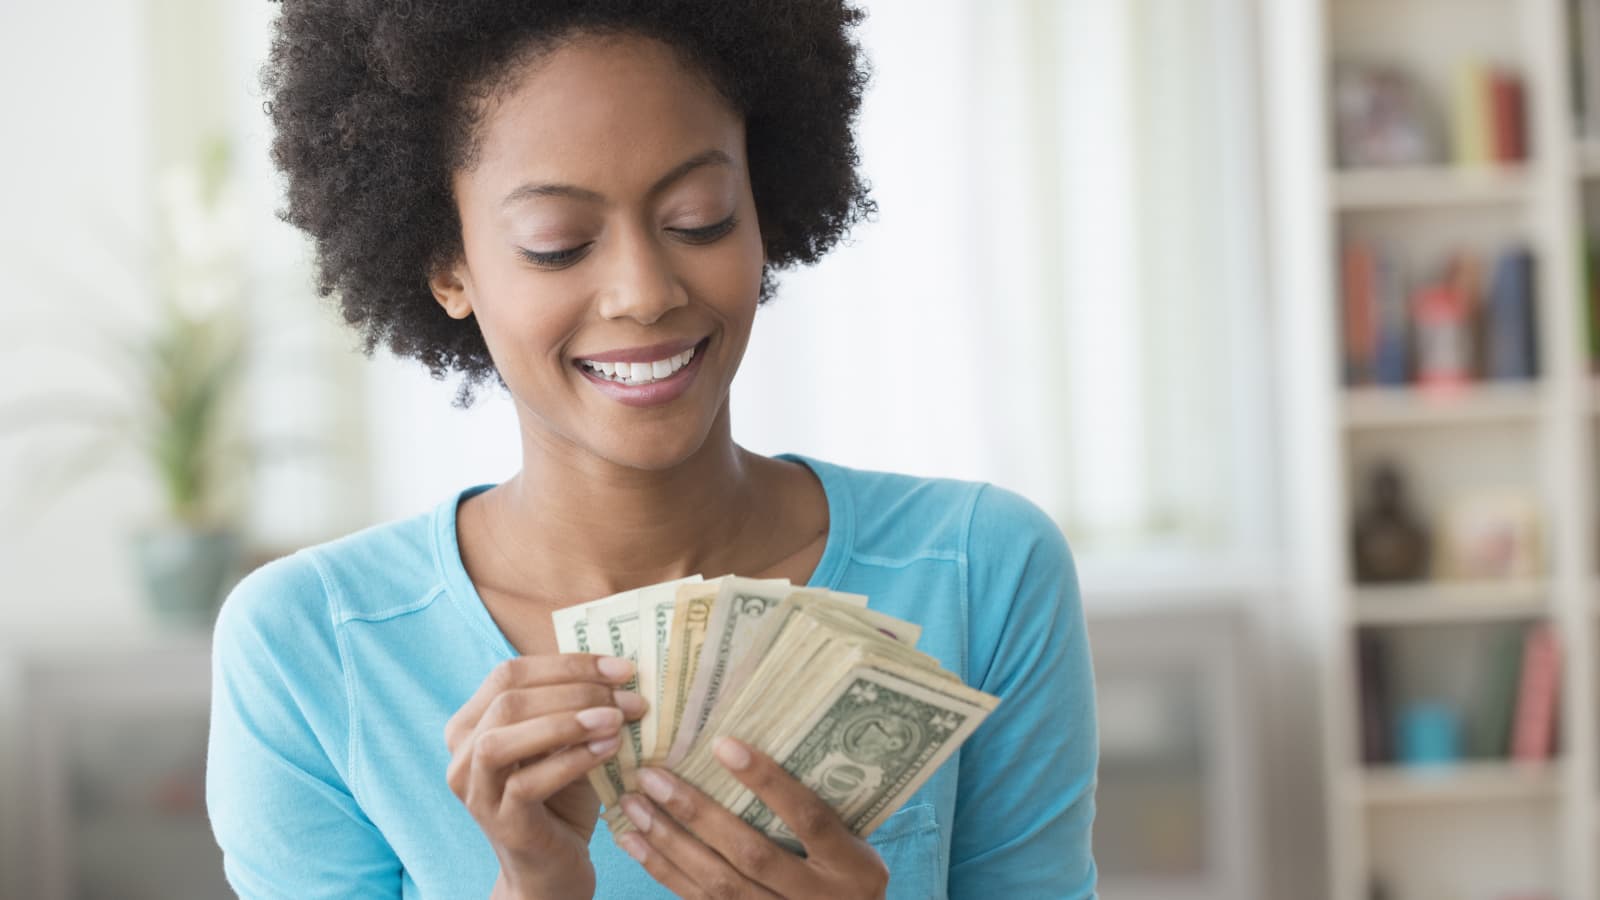 Woman in blue top holding a fan of money.